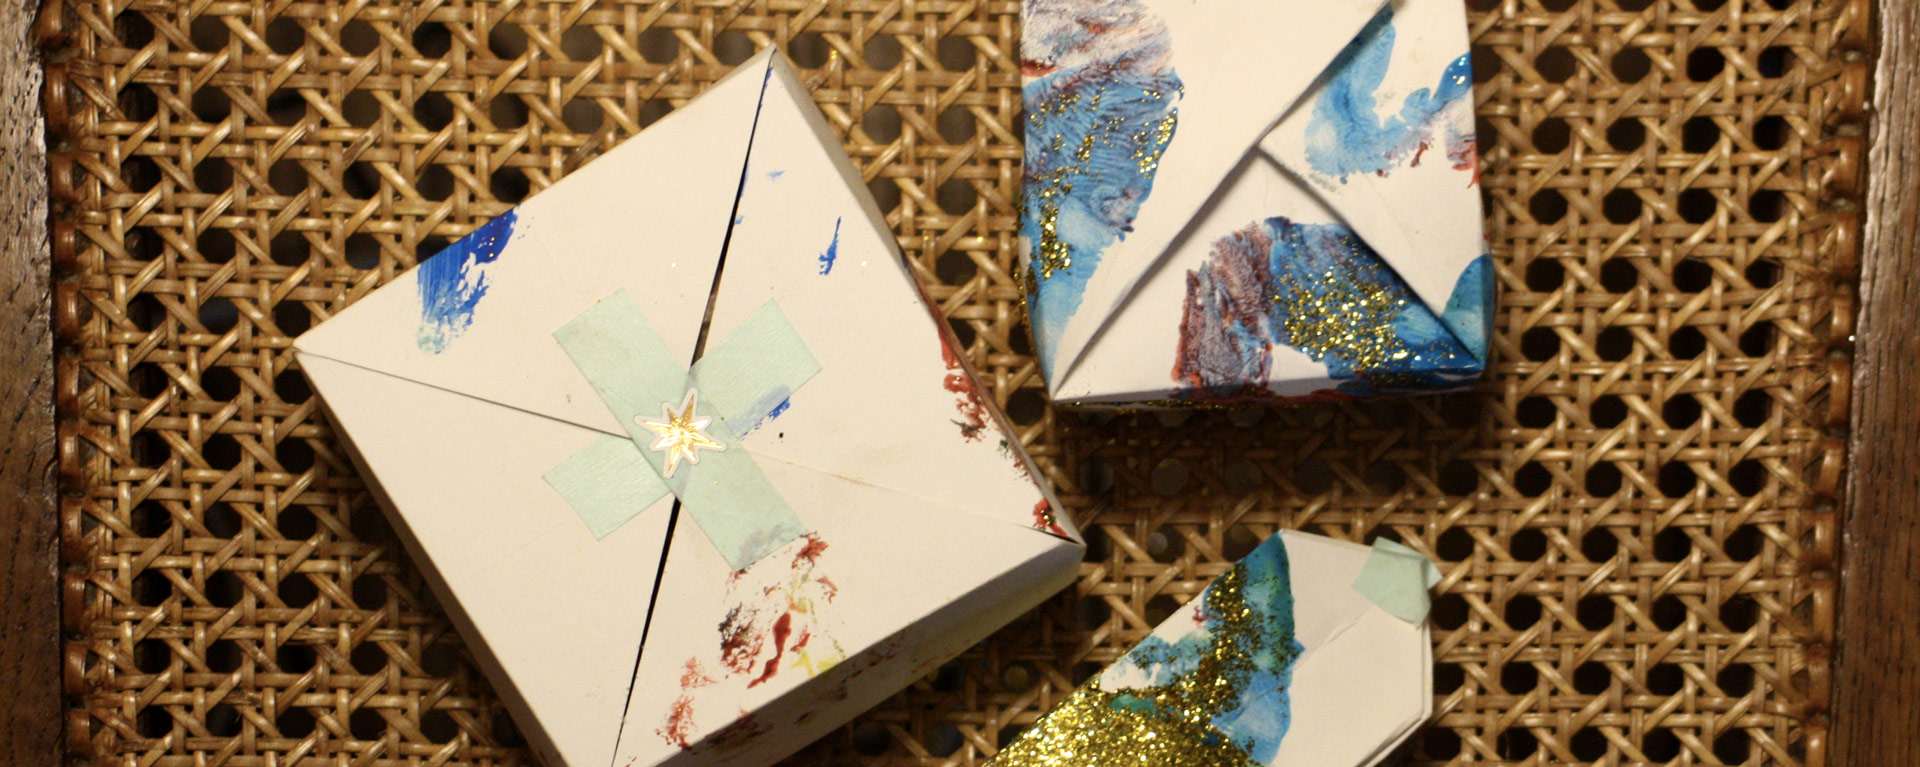 boîte chocolats enfant peinture diy fait maison carton papier soie déco perso pliage paillettes noël homemade chocolate box cadeau